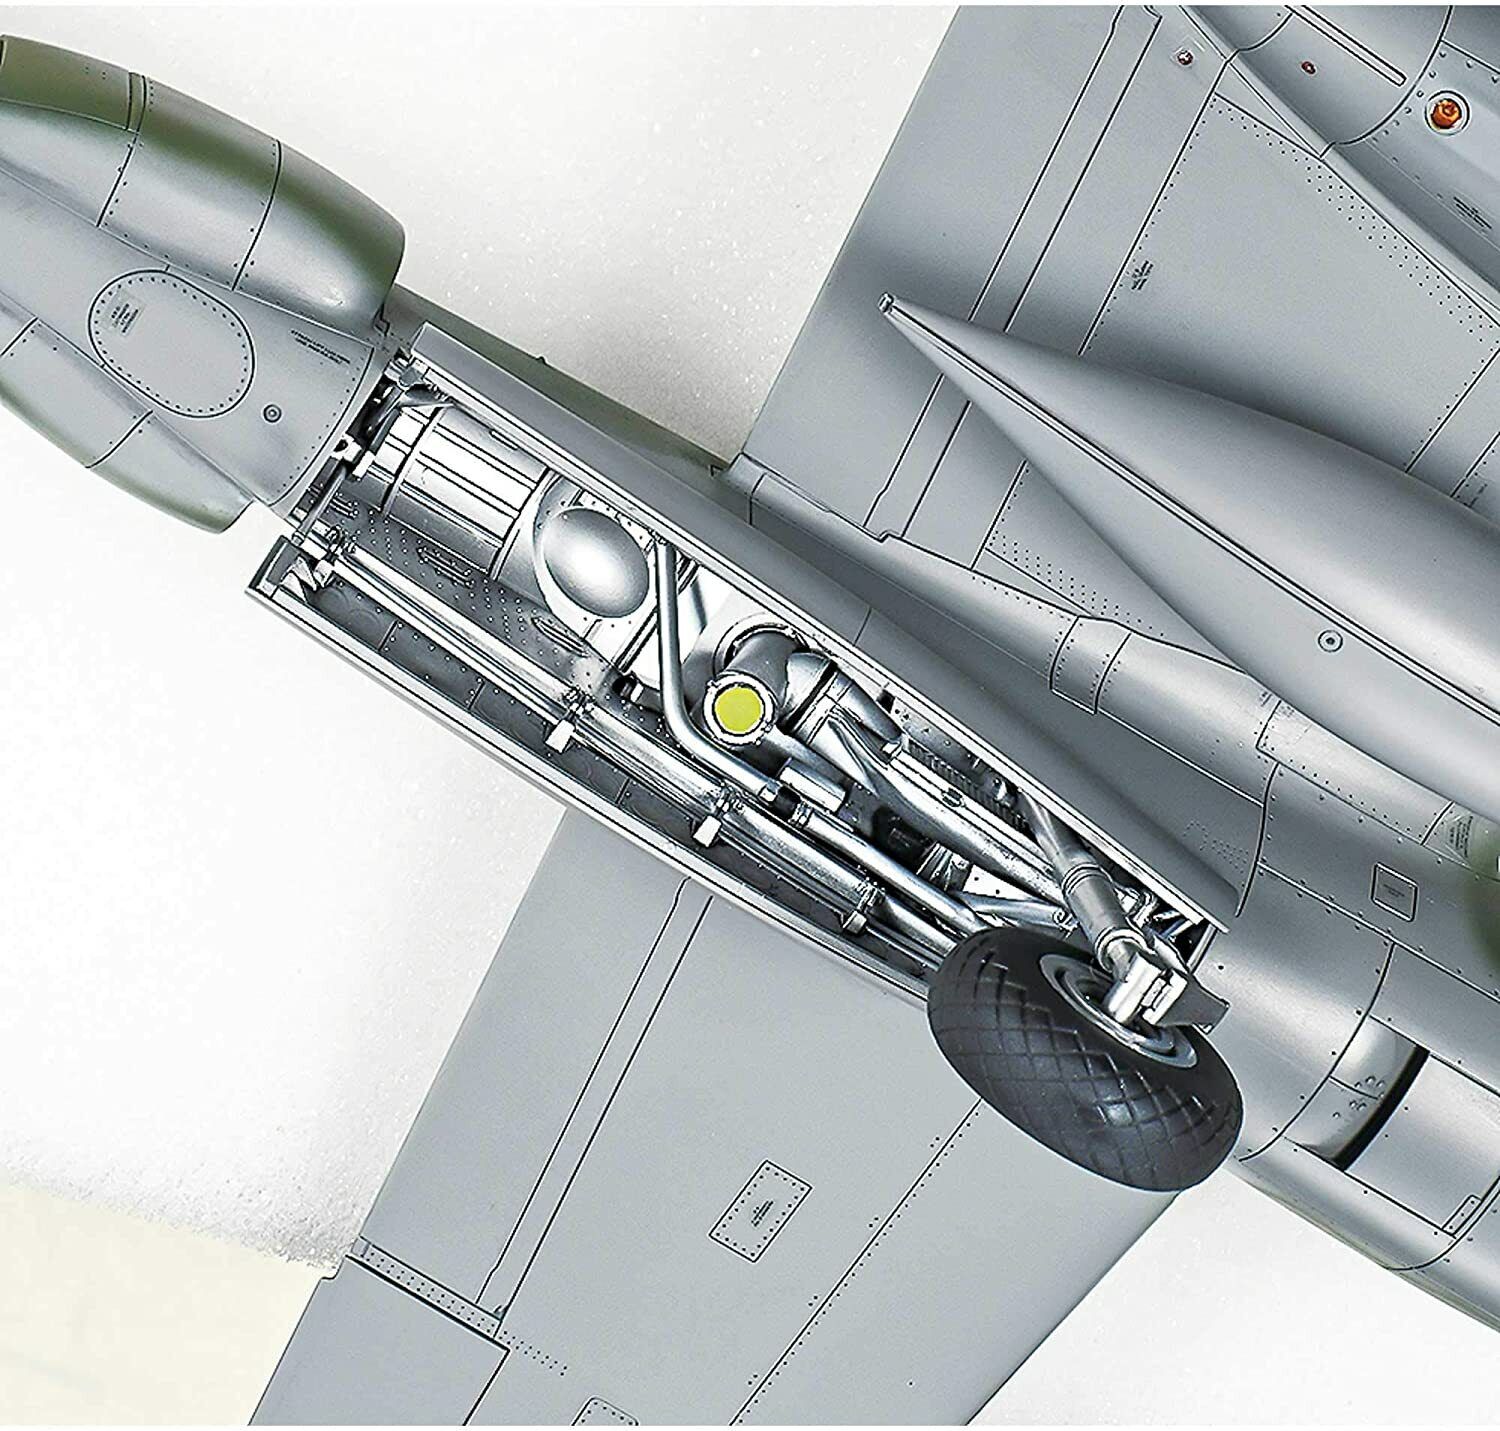 Tamiya (TAMIYA) 1/48 Lockheed P-38 F/G Lightning Aircraft Kit - 61120 for  sale online | eBay